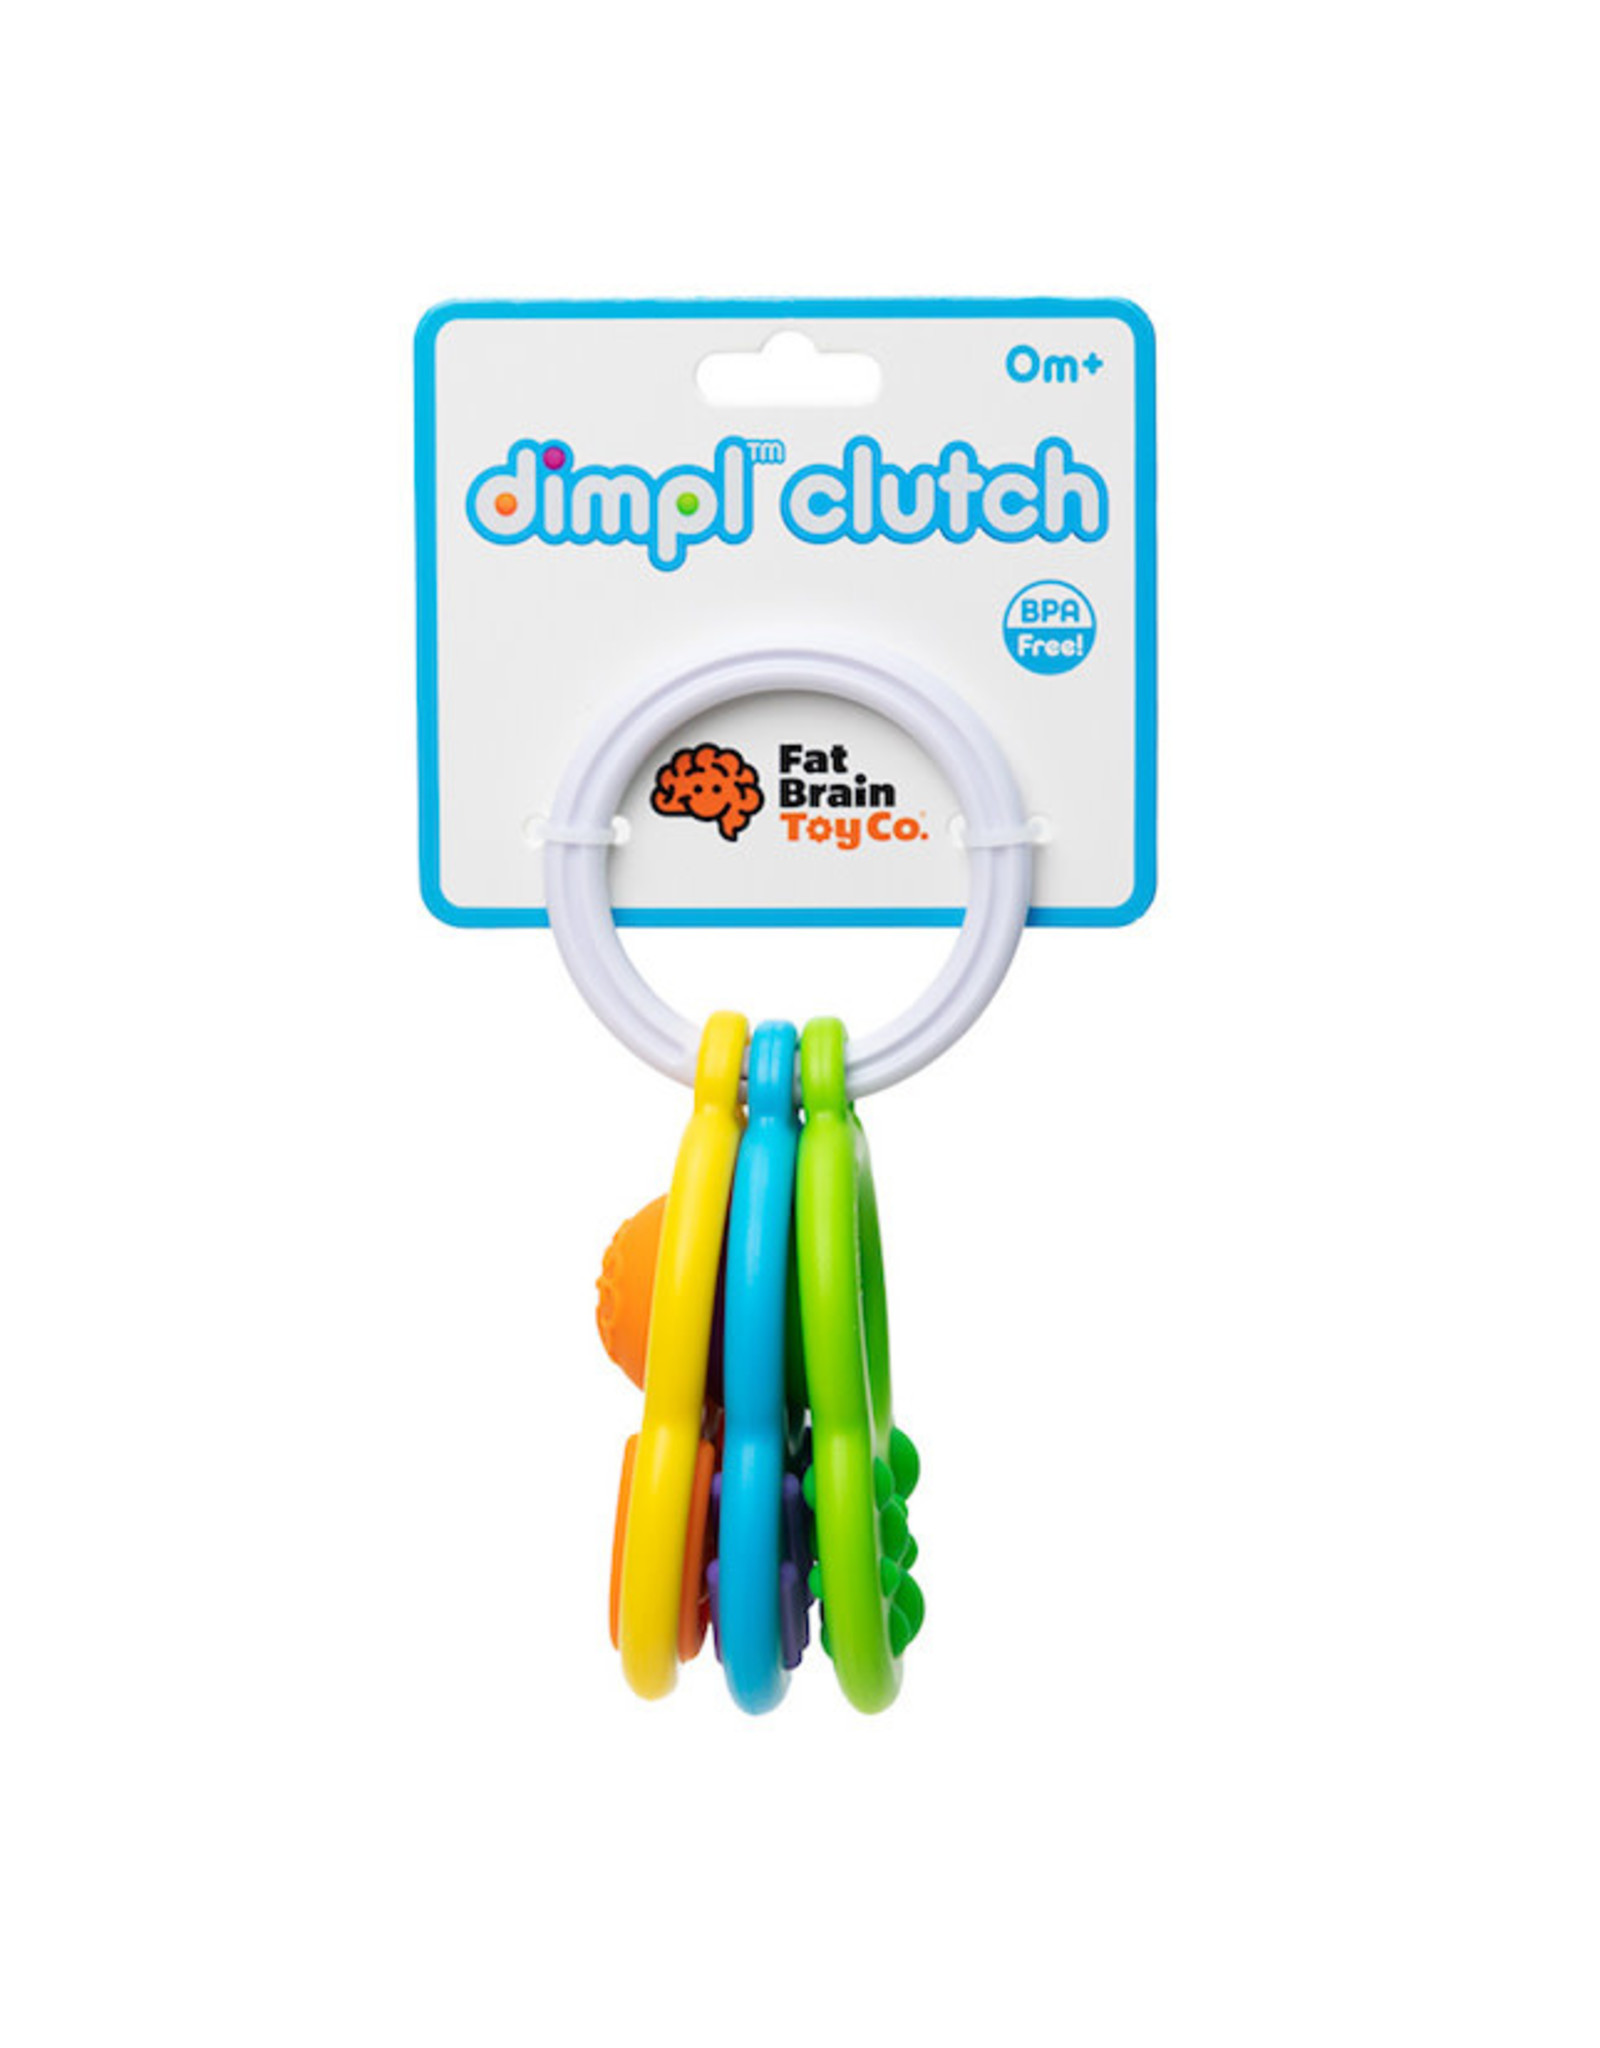 Fat Brain Toy Co. dimpl clutch